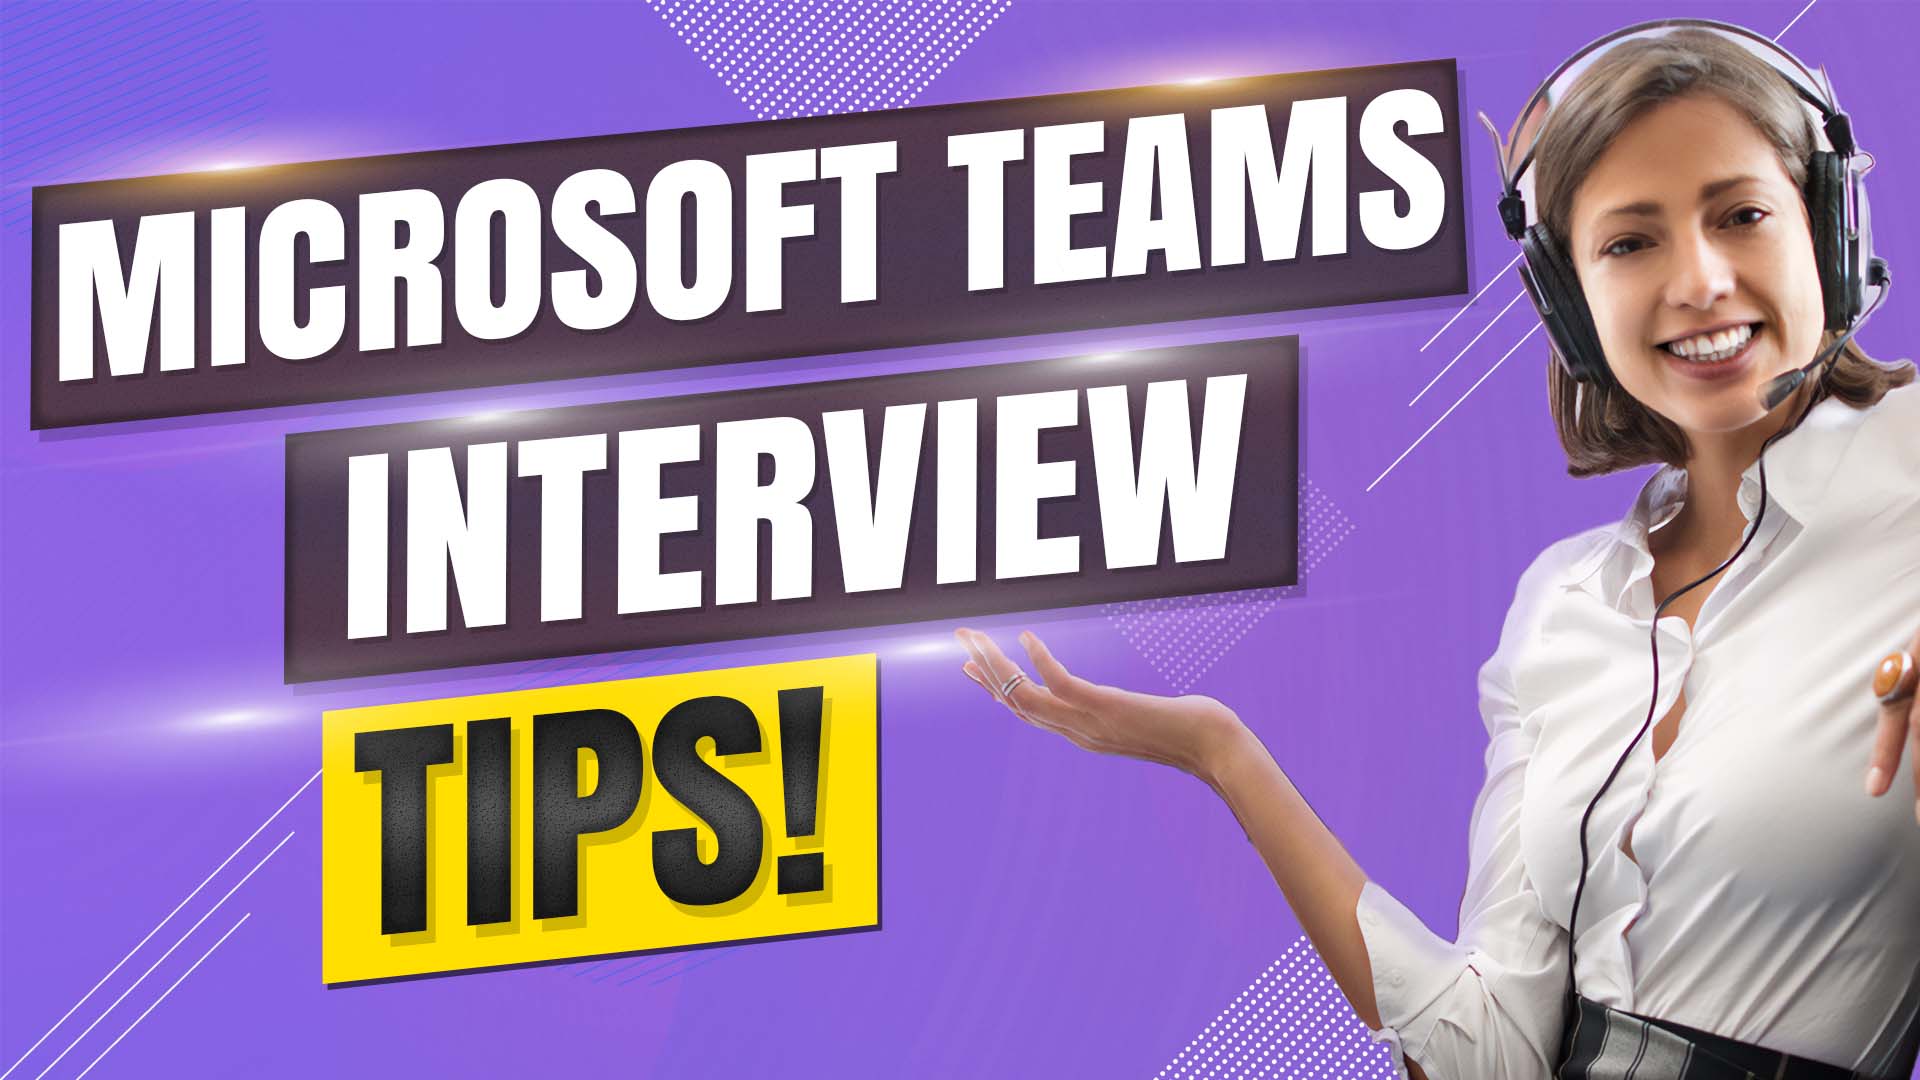 Microsoft Teams là ứng dụng đem lại sự tiện lợi và linh hoạt cho công việc đang dần trở thành nền tảng thương mại điện tử quan trọng. Tìm hiểu cách sử dụng Microsoft Teams để nâng cao năng suất công việc.